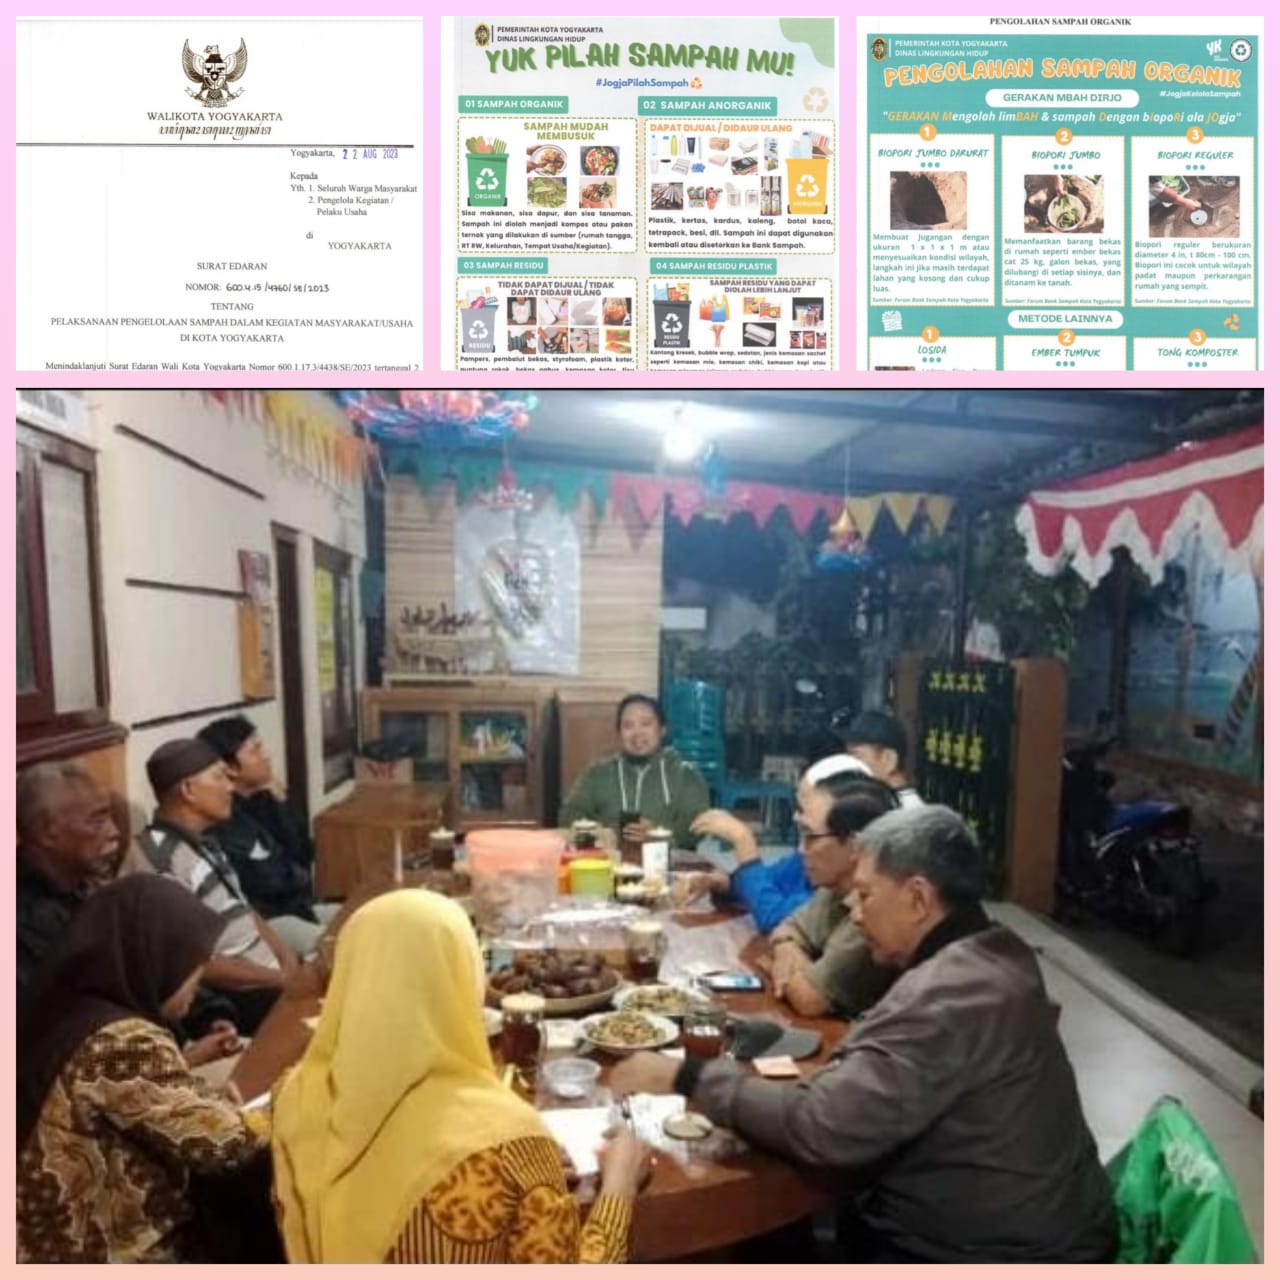 Sosialisasi SE Walikota Yogyakarta Tentang Pelaksanaan Pengelolaan Sampah di Kota Yogyakarta kepada LPMK, BKM dan RW se Kelurahan Cokrodiningratan